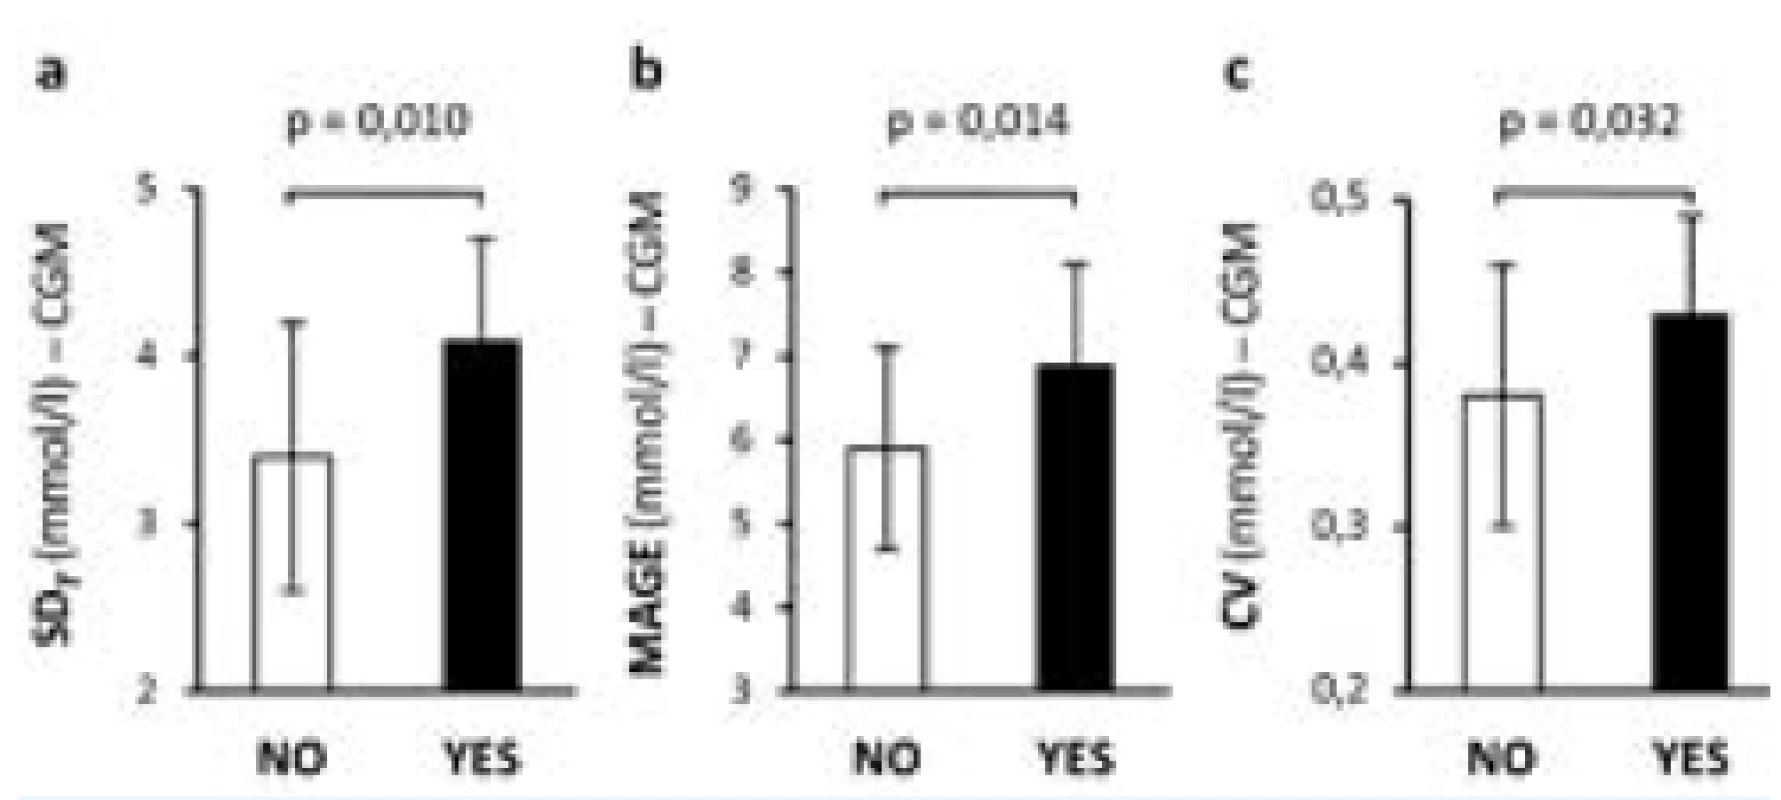 Porovnání krátkodobé glykemické variability u pacientů s DM 1. typu bez komplikací (NE, bílé sloupce)
a s mikrovaskulárními komplikacemi (ANO, černé sloupce).